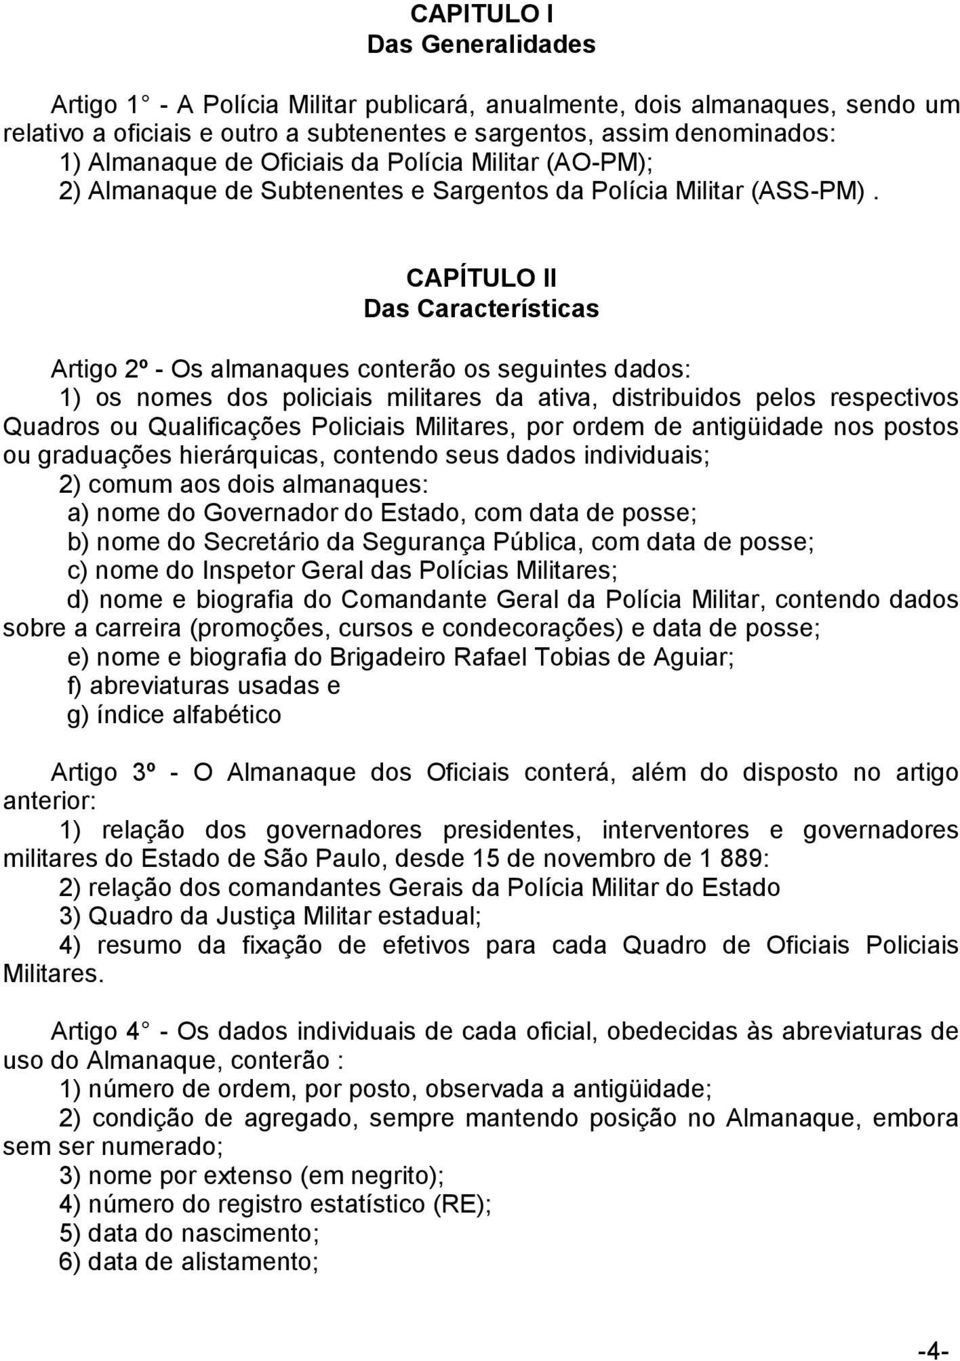 CAPÍTULO II Das Características Artigo 2º - Os almanaques conterão os seguintes dados: 1) os nomes dos policiais militares da ativa, distribuidos pelos respectivos Quadros ou Qualificações Policiais